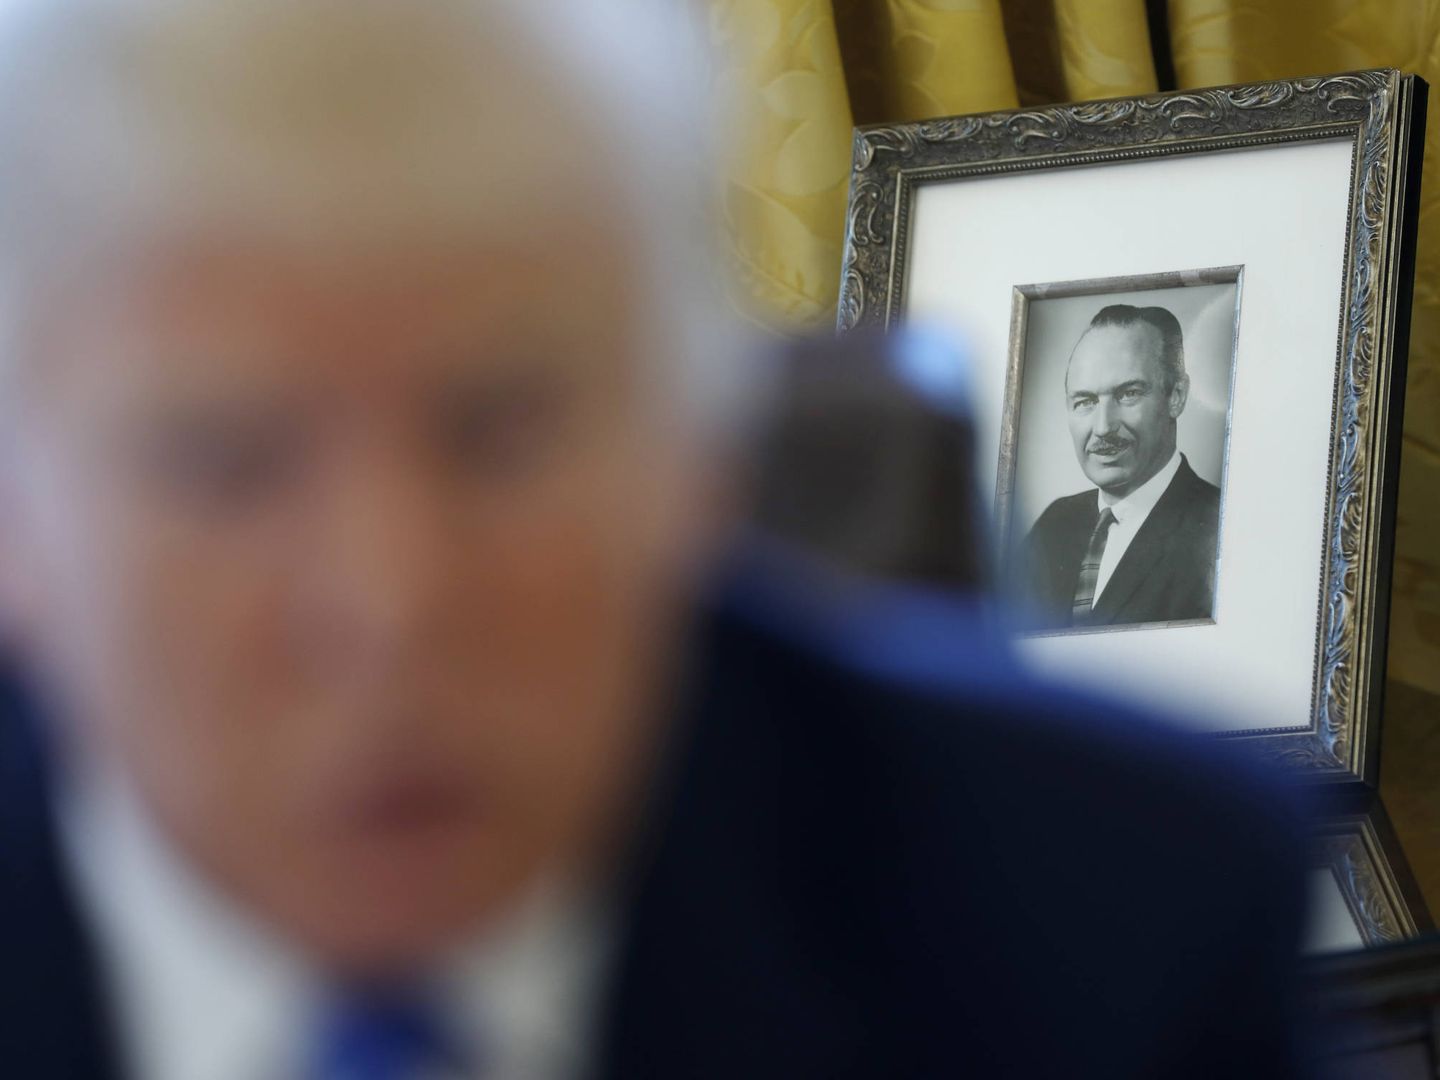 Una foto del difunto Fred Trump detrás del presidente durante una entrevista en el Despacho Oval de la Casa Blanca. (Reuters)